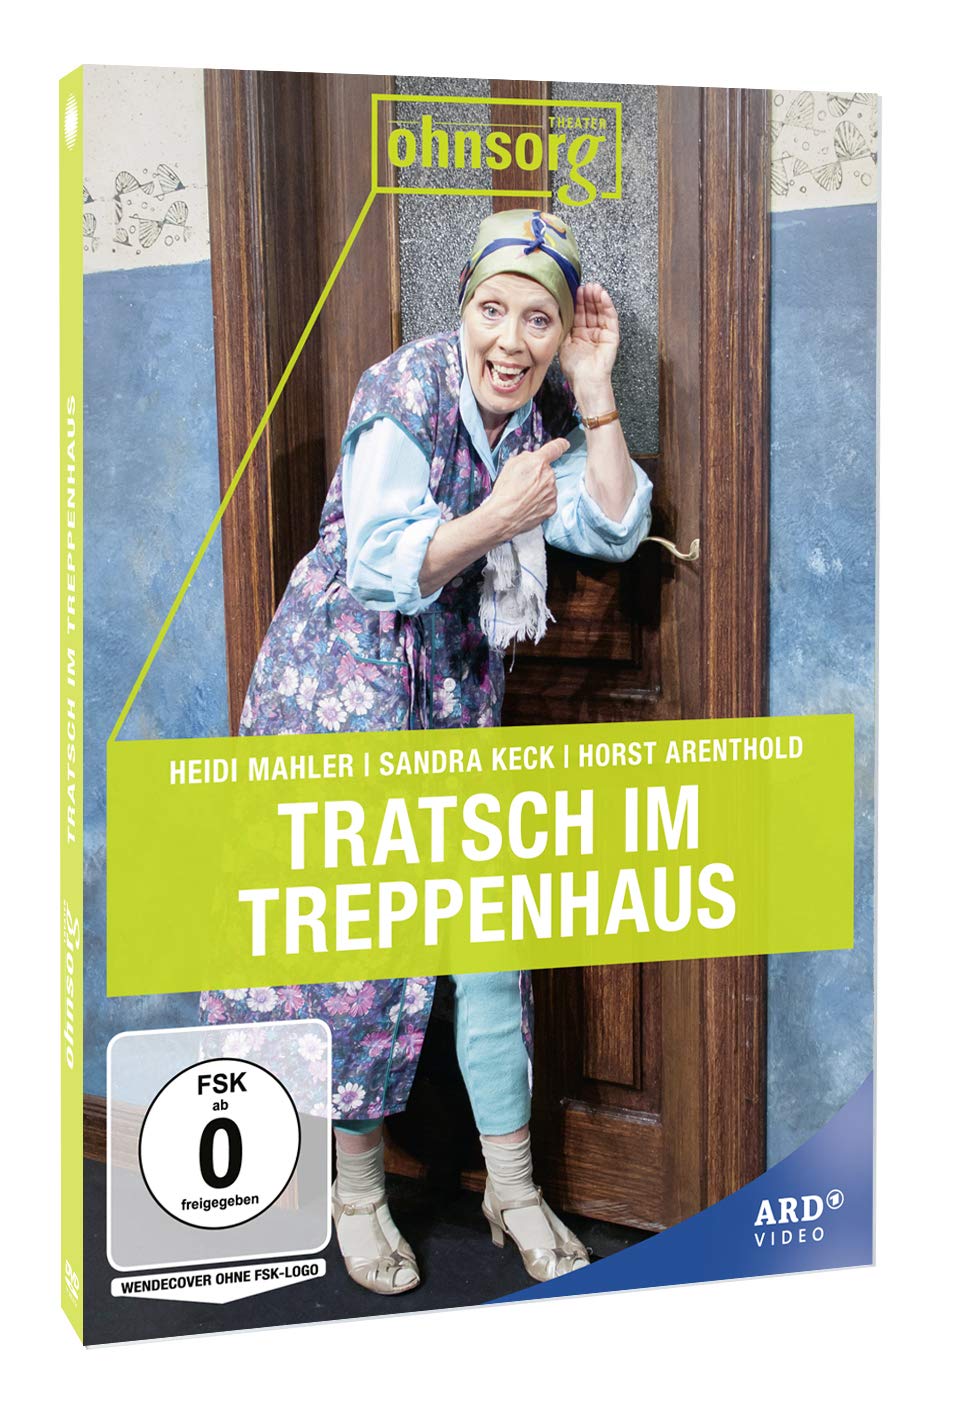 Ohnsorg - Theater heute: Tratsch im Treppenhaus